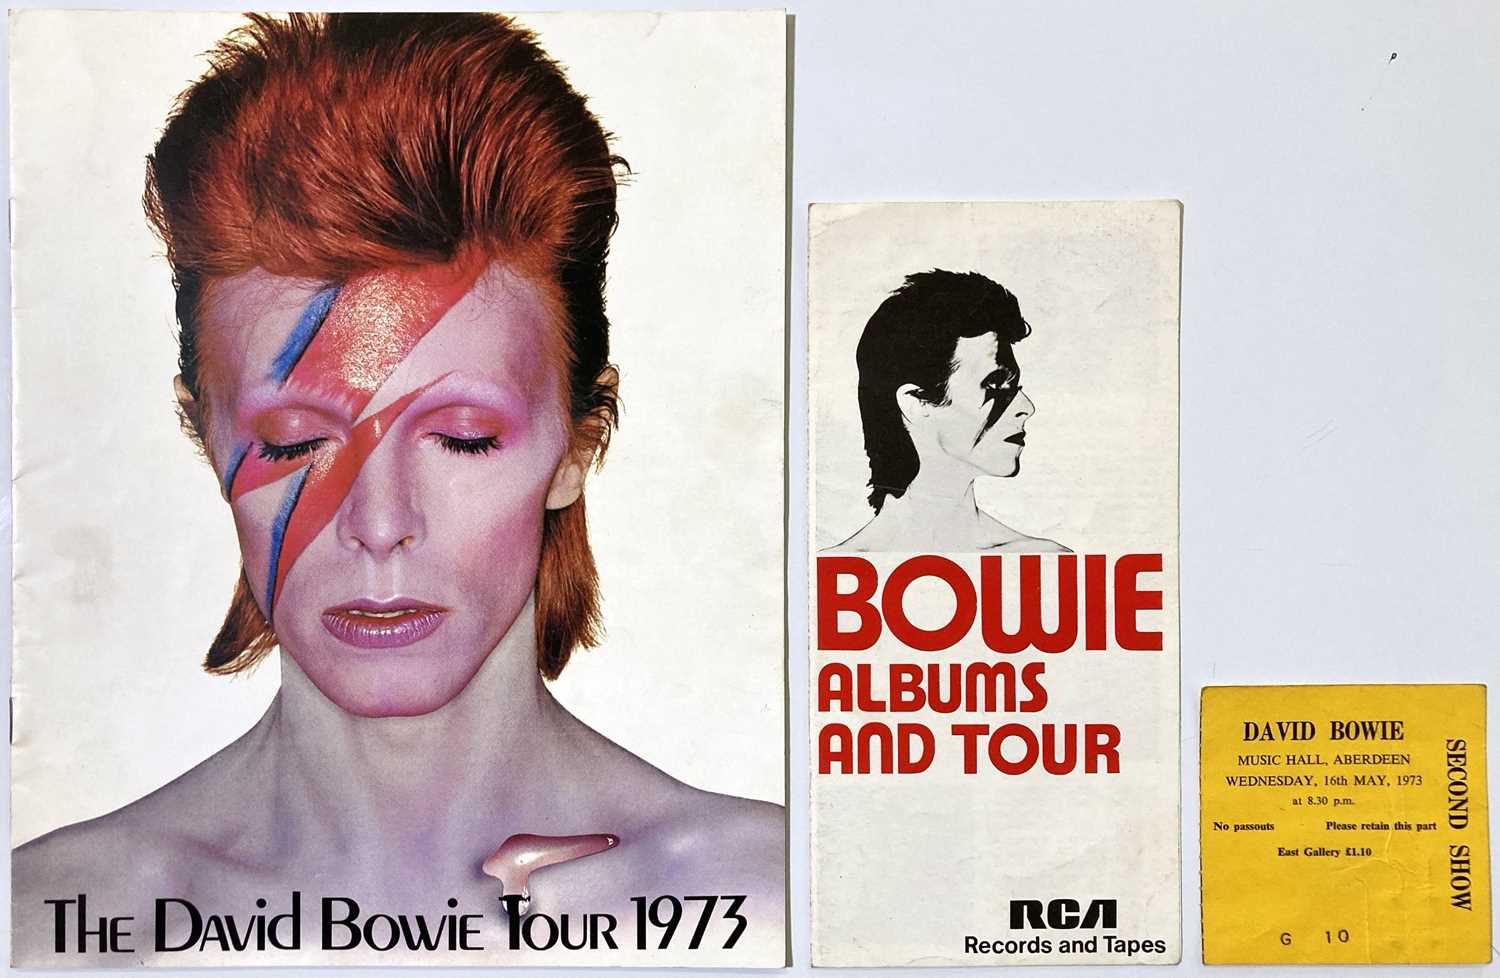 david bowie tour dates 1973